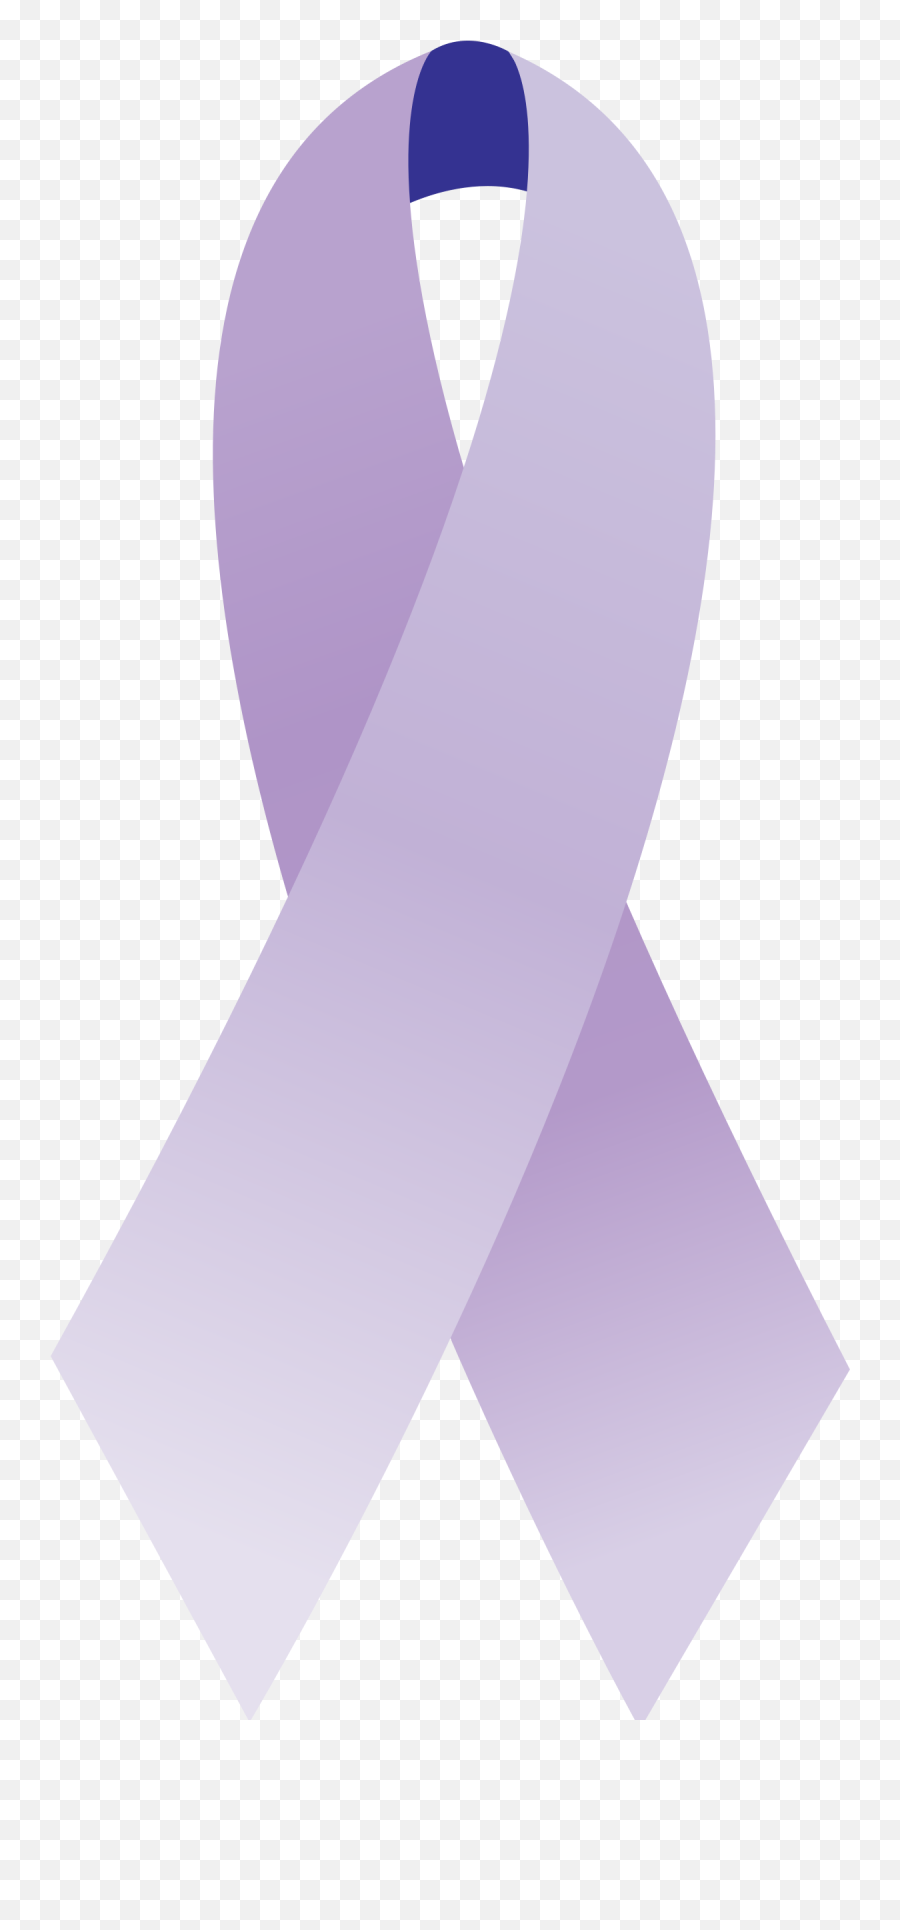 Filecancer Ribbon Generalsvg - Wikipedia Cancer Ribbons Transparent Lavender Png,Ribbon Logo Png